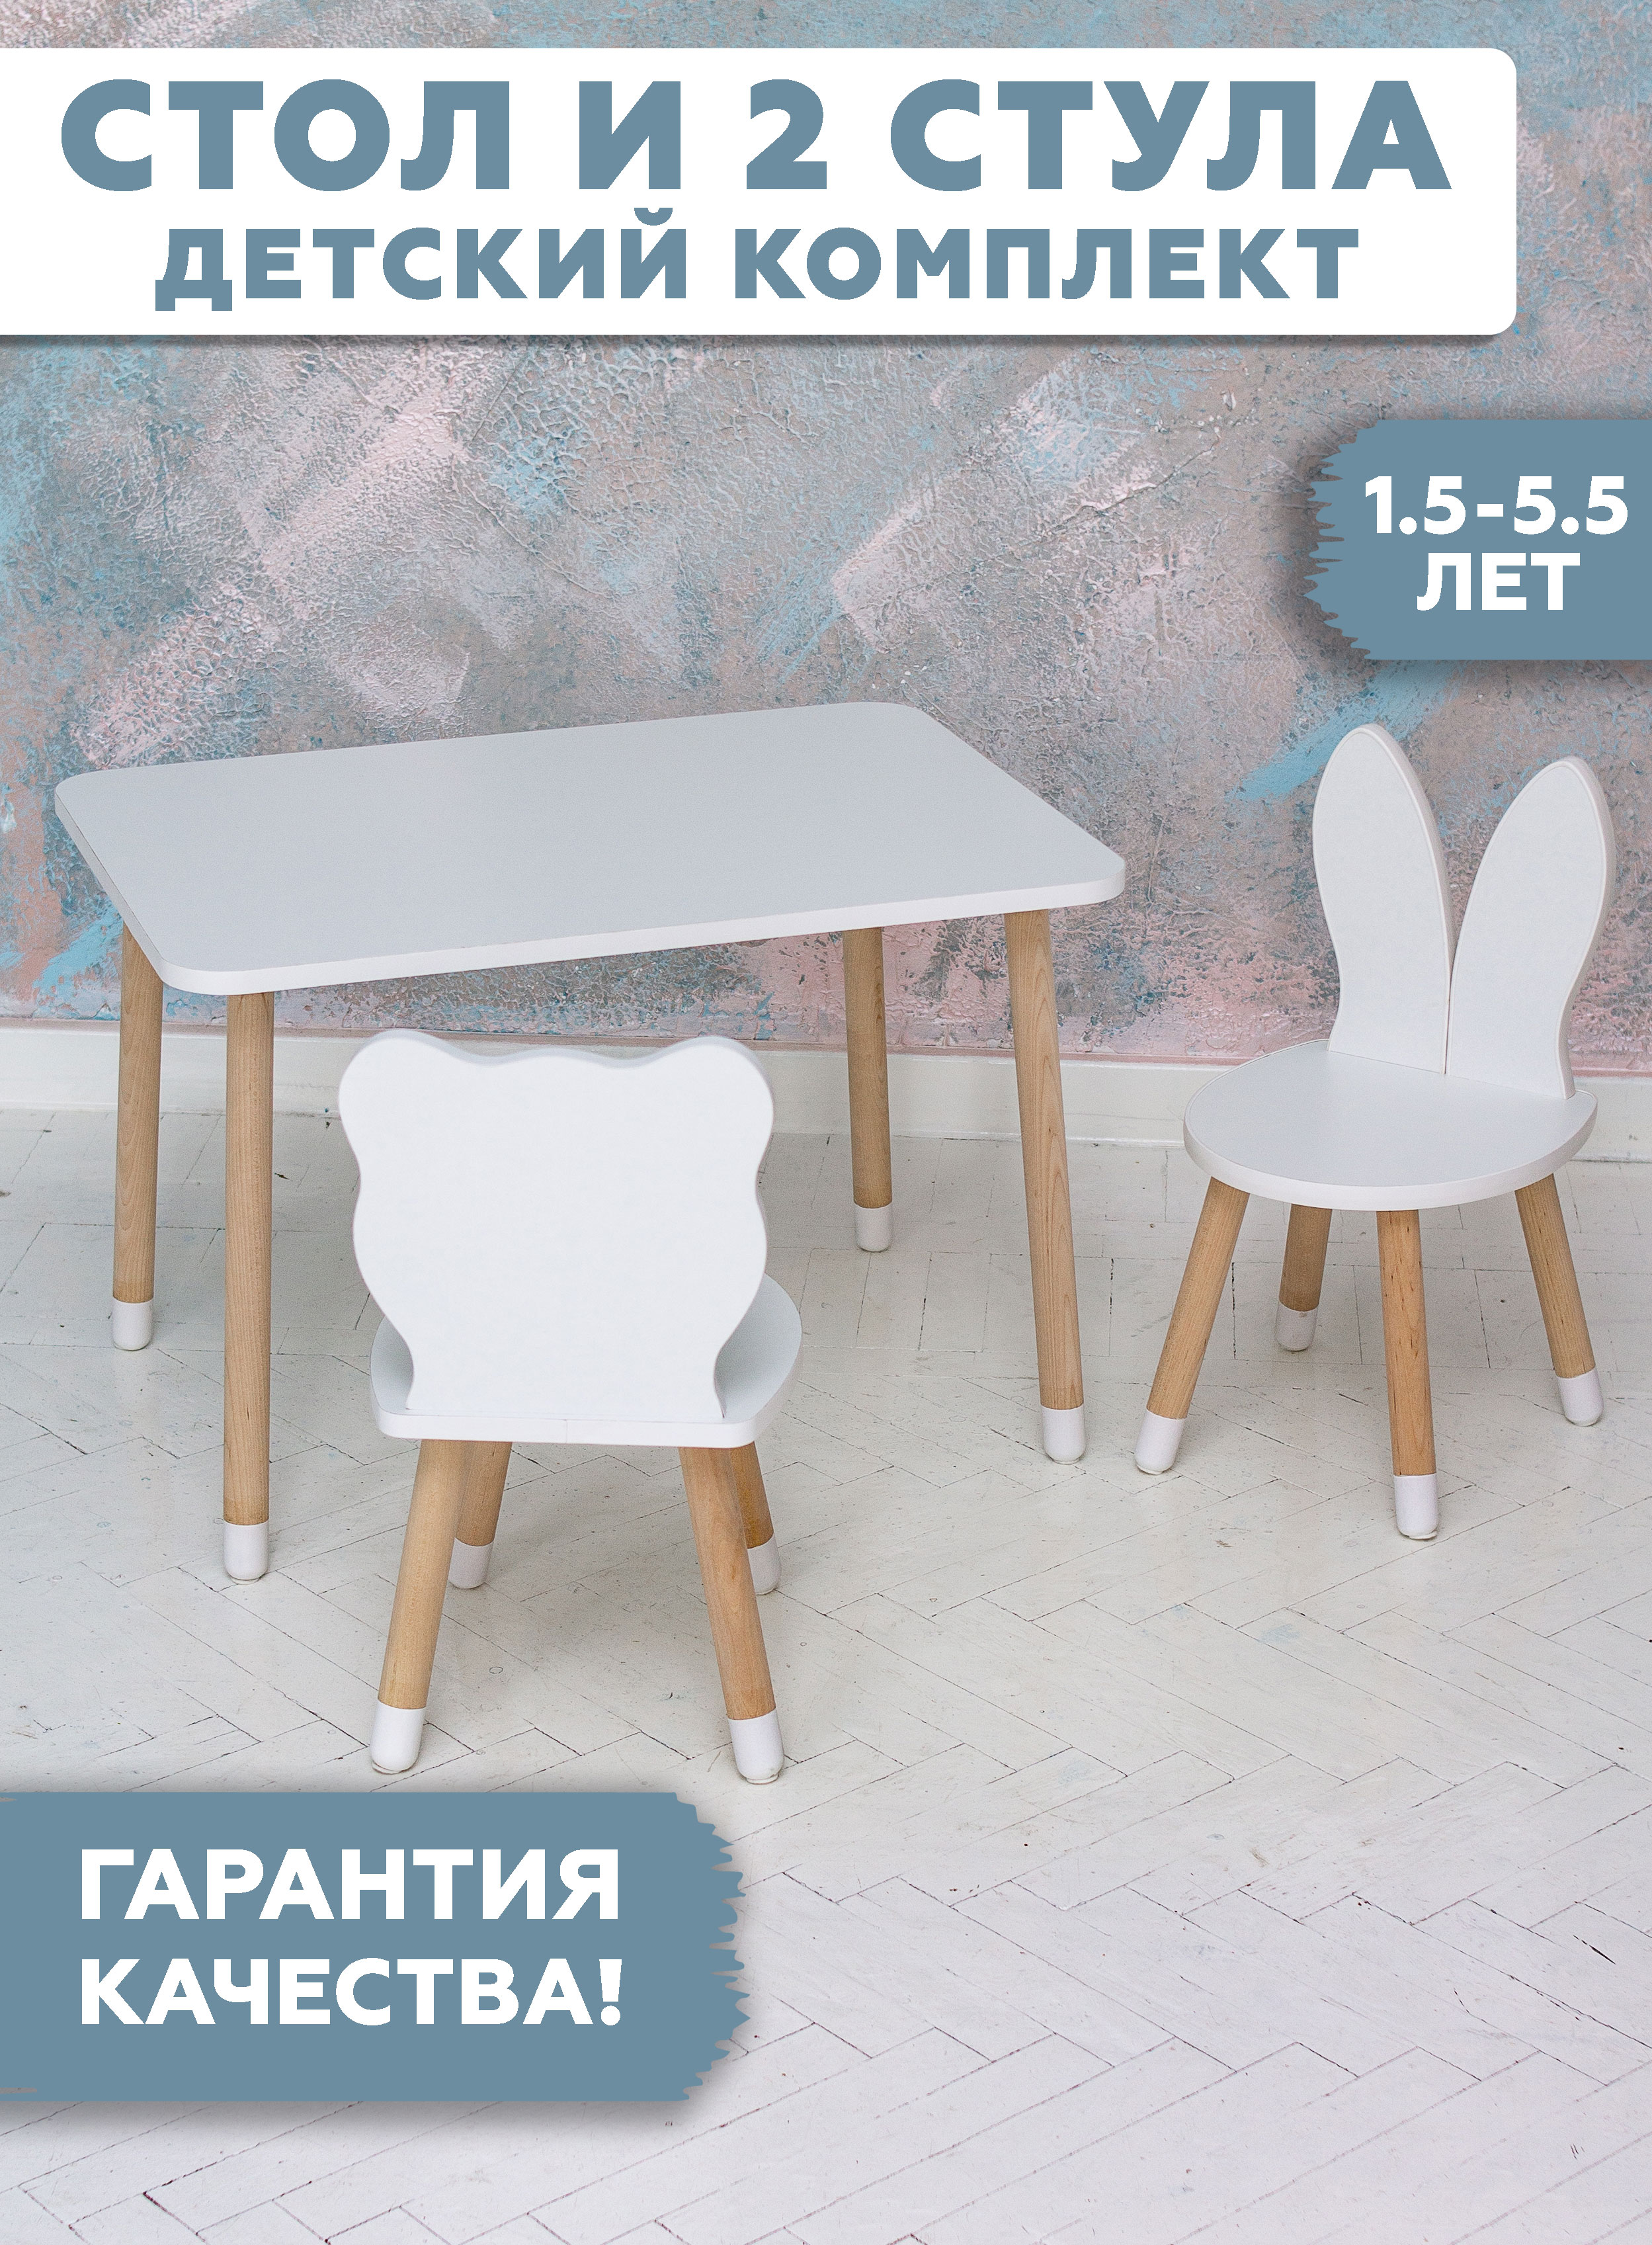 Комплект детской мебели RuLes стол прямоугольный, стулья мишка и зайка, ножки в носочках комплект детской мебели rules стол и стульчик мишка ножки цилиндрической формы в носочках